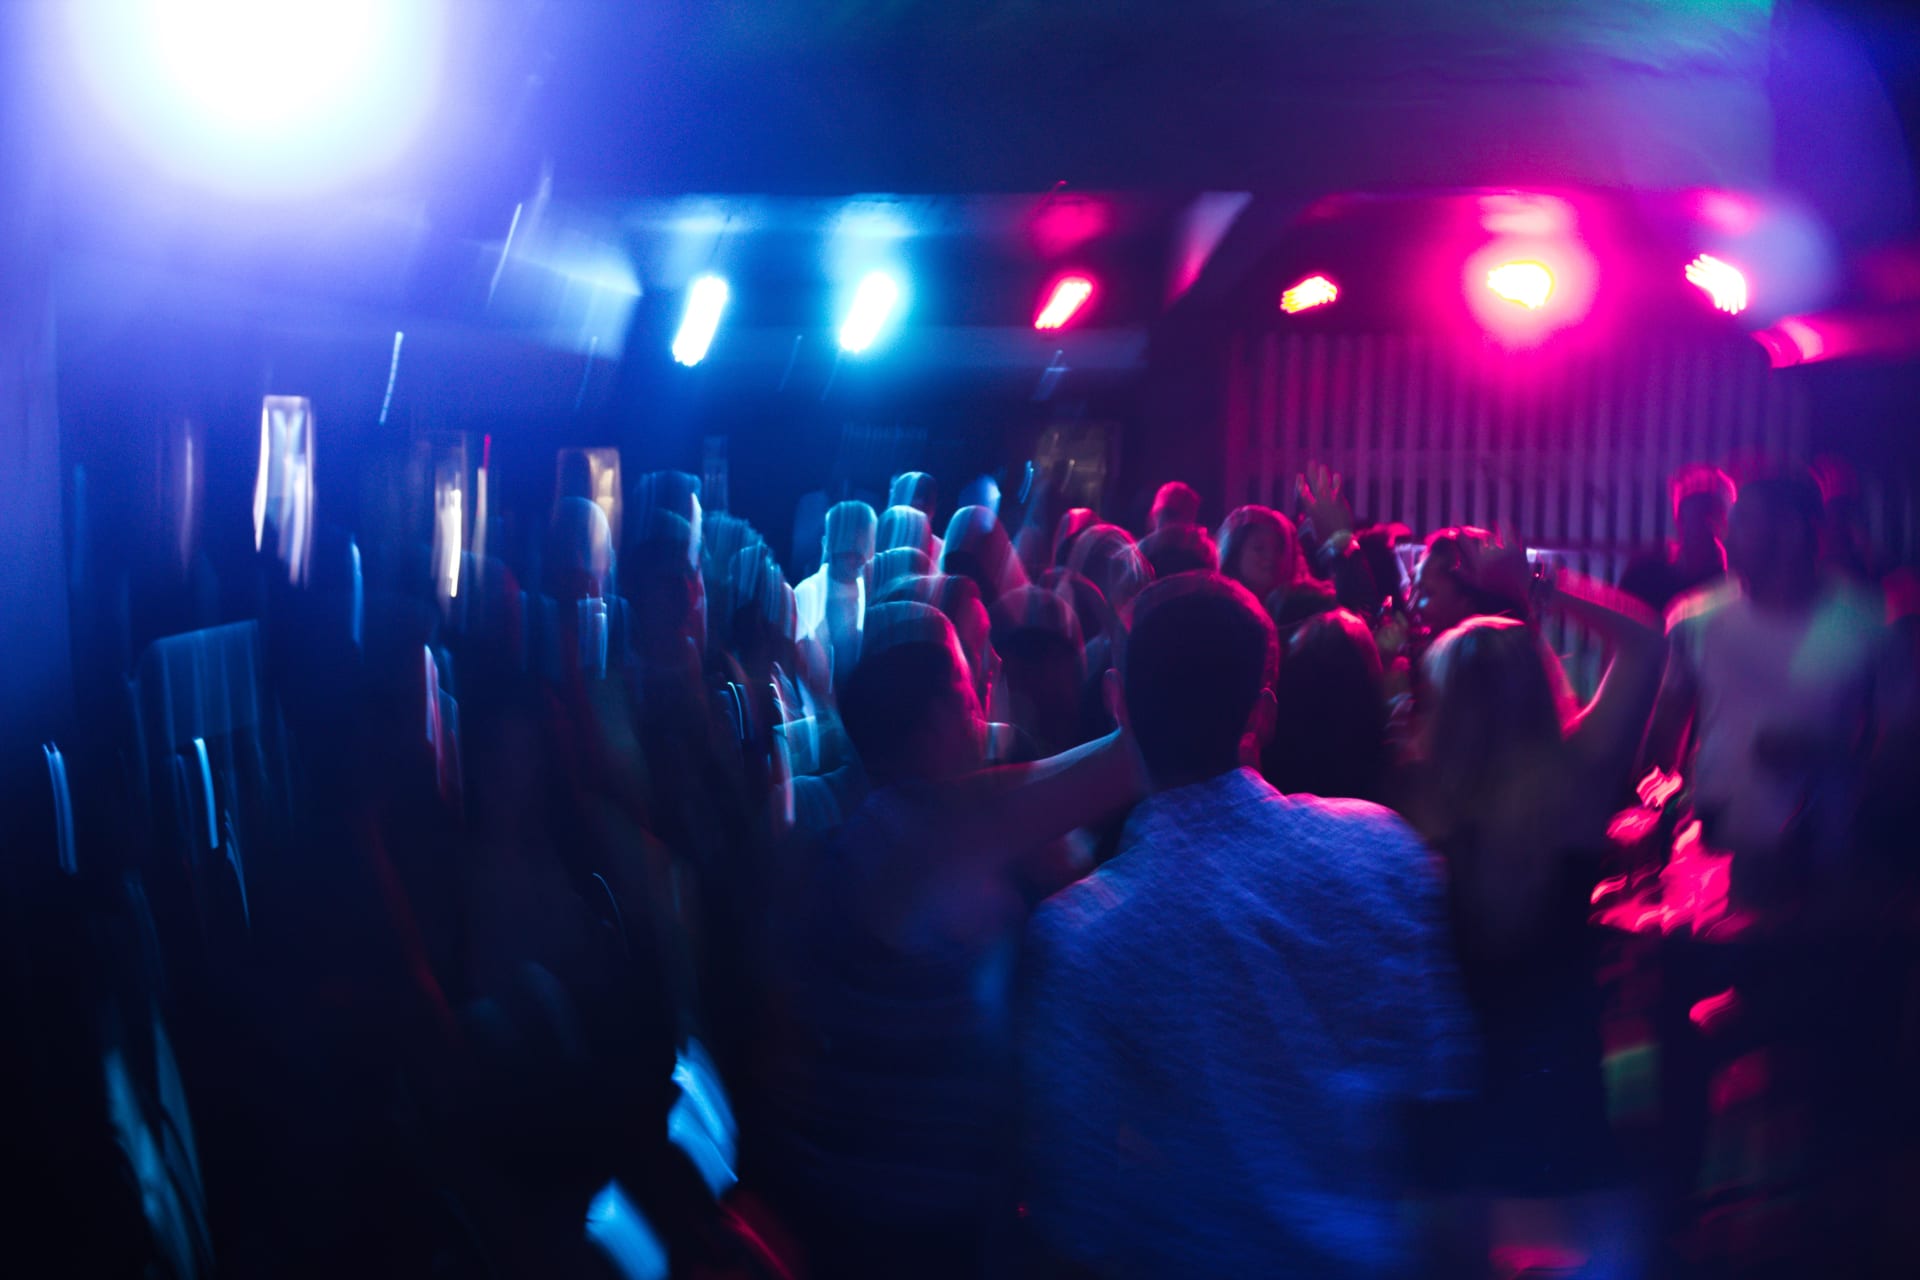 Vláda otevřela kluby, tanec v nich však zakázala. Lidé přesto do podniků chodí a tančí načerno. (ilustrační snímek)